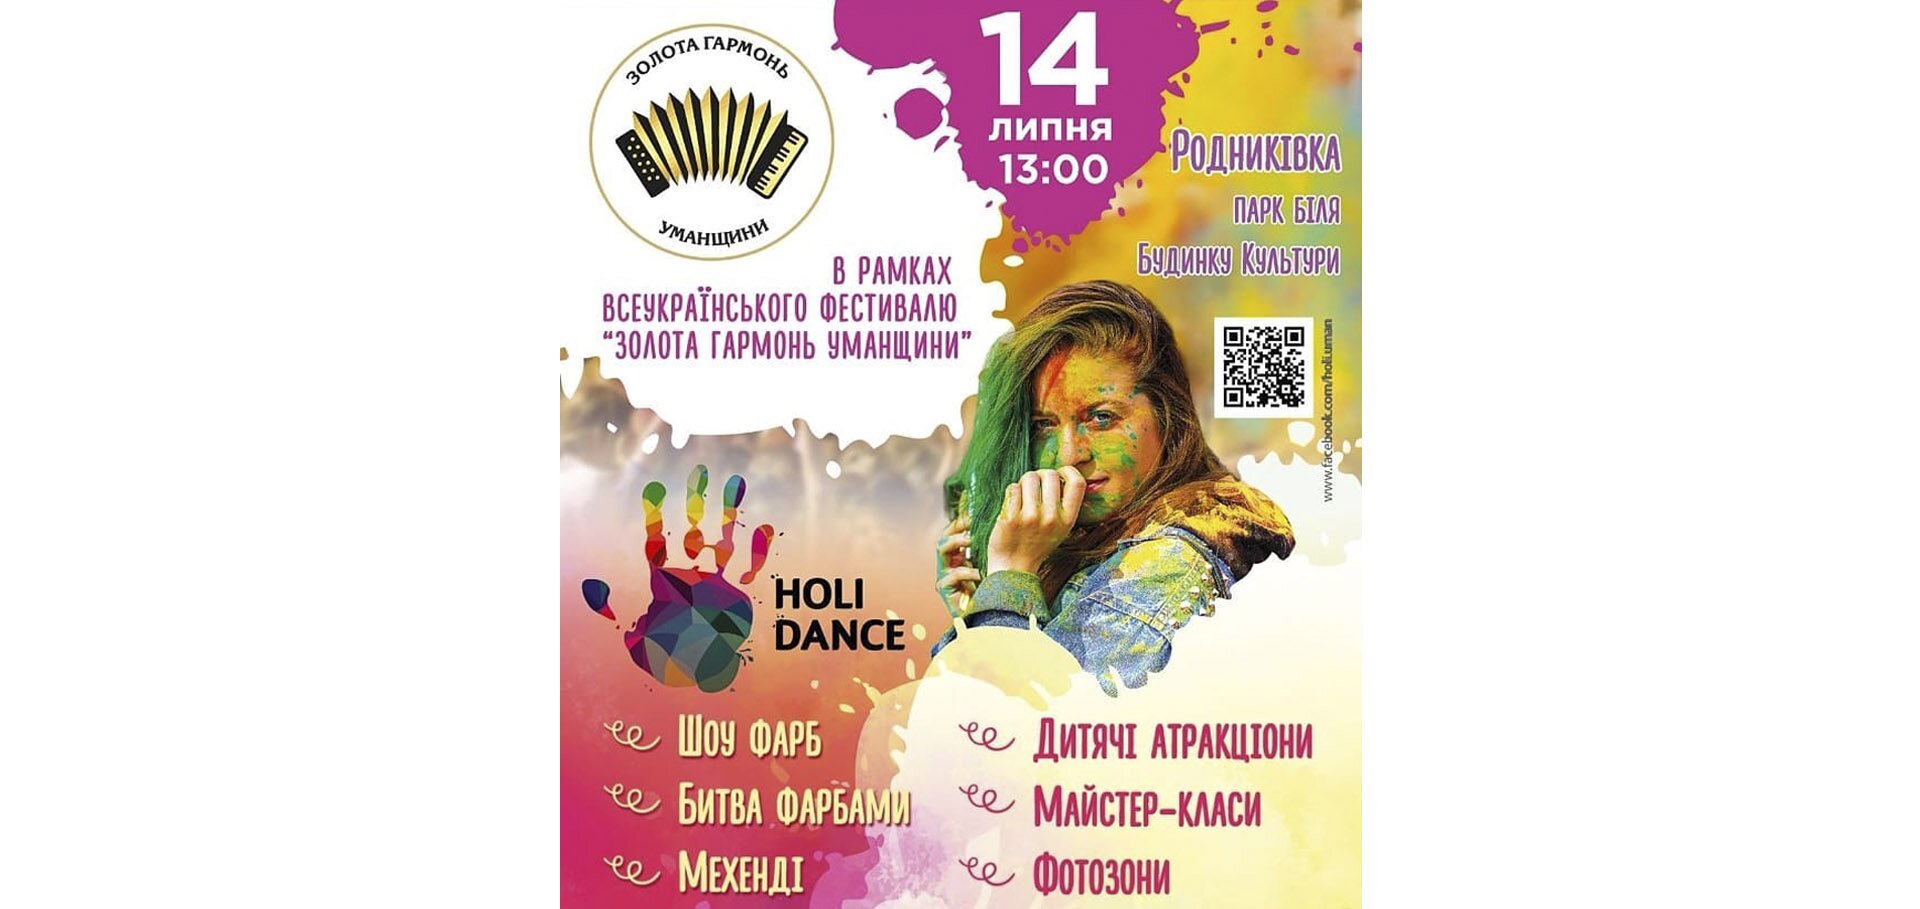 На першому Всеукраїнському фестивалі "Золота гармонь Уманщини" відбудеться битва фарбами